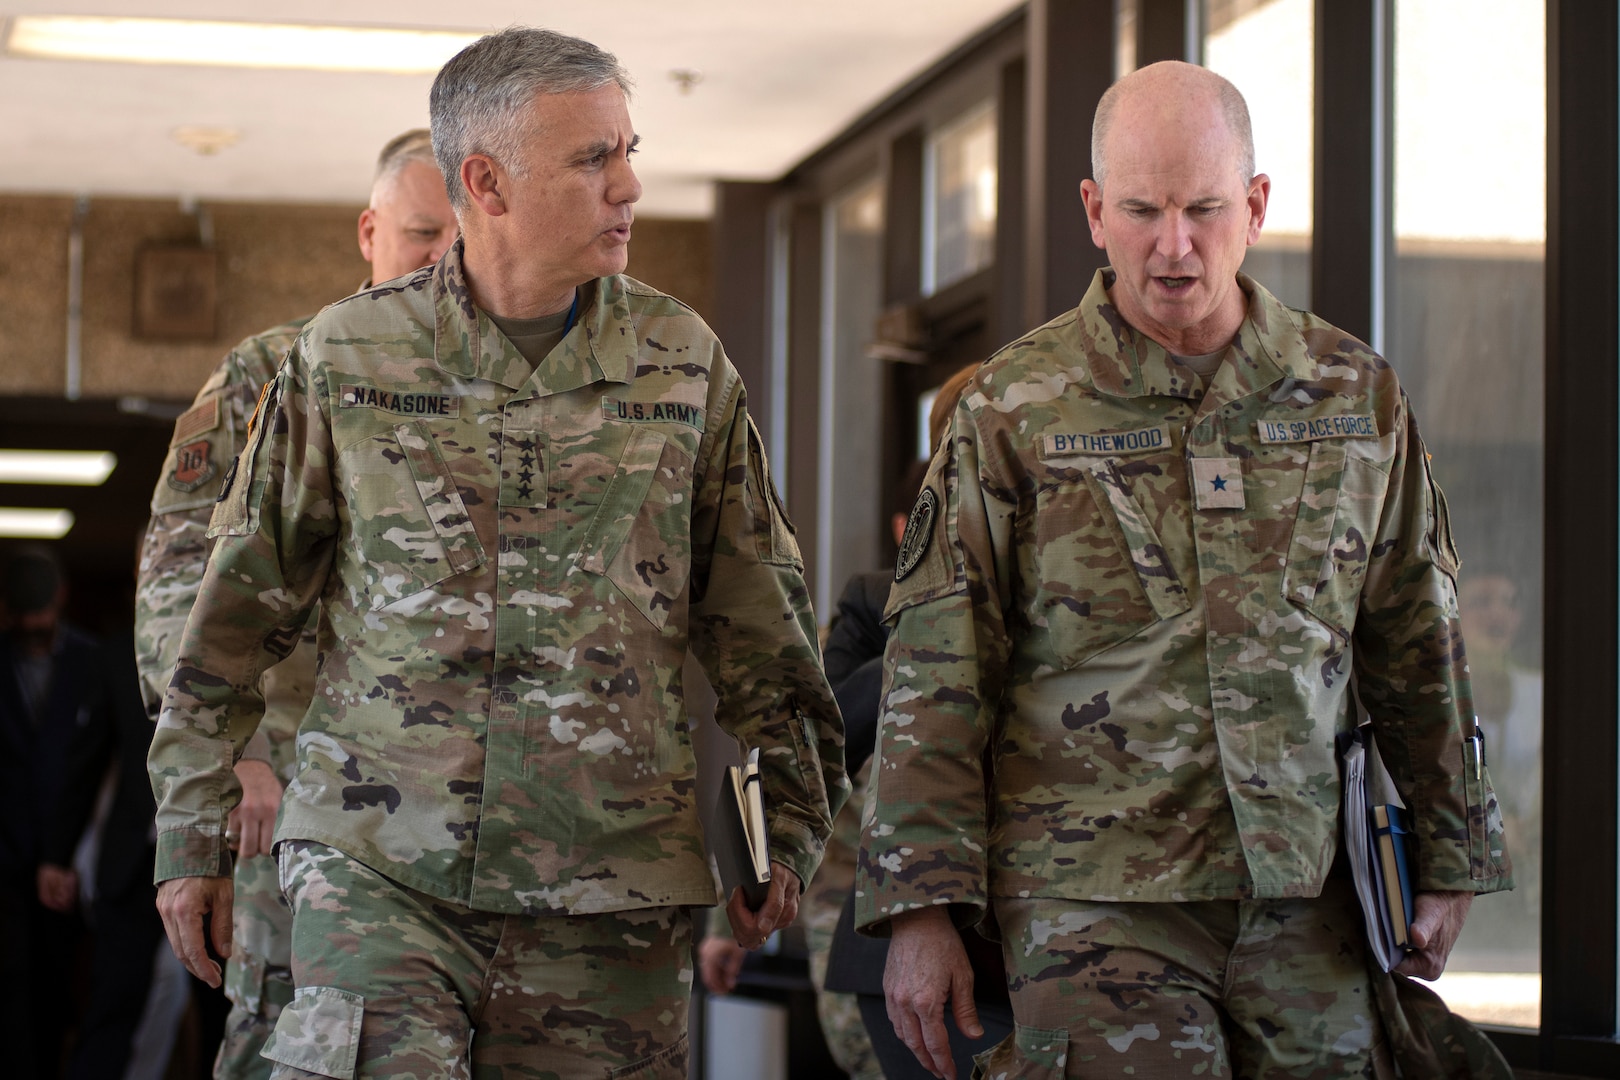 Two military men walking in uniform